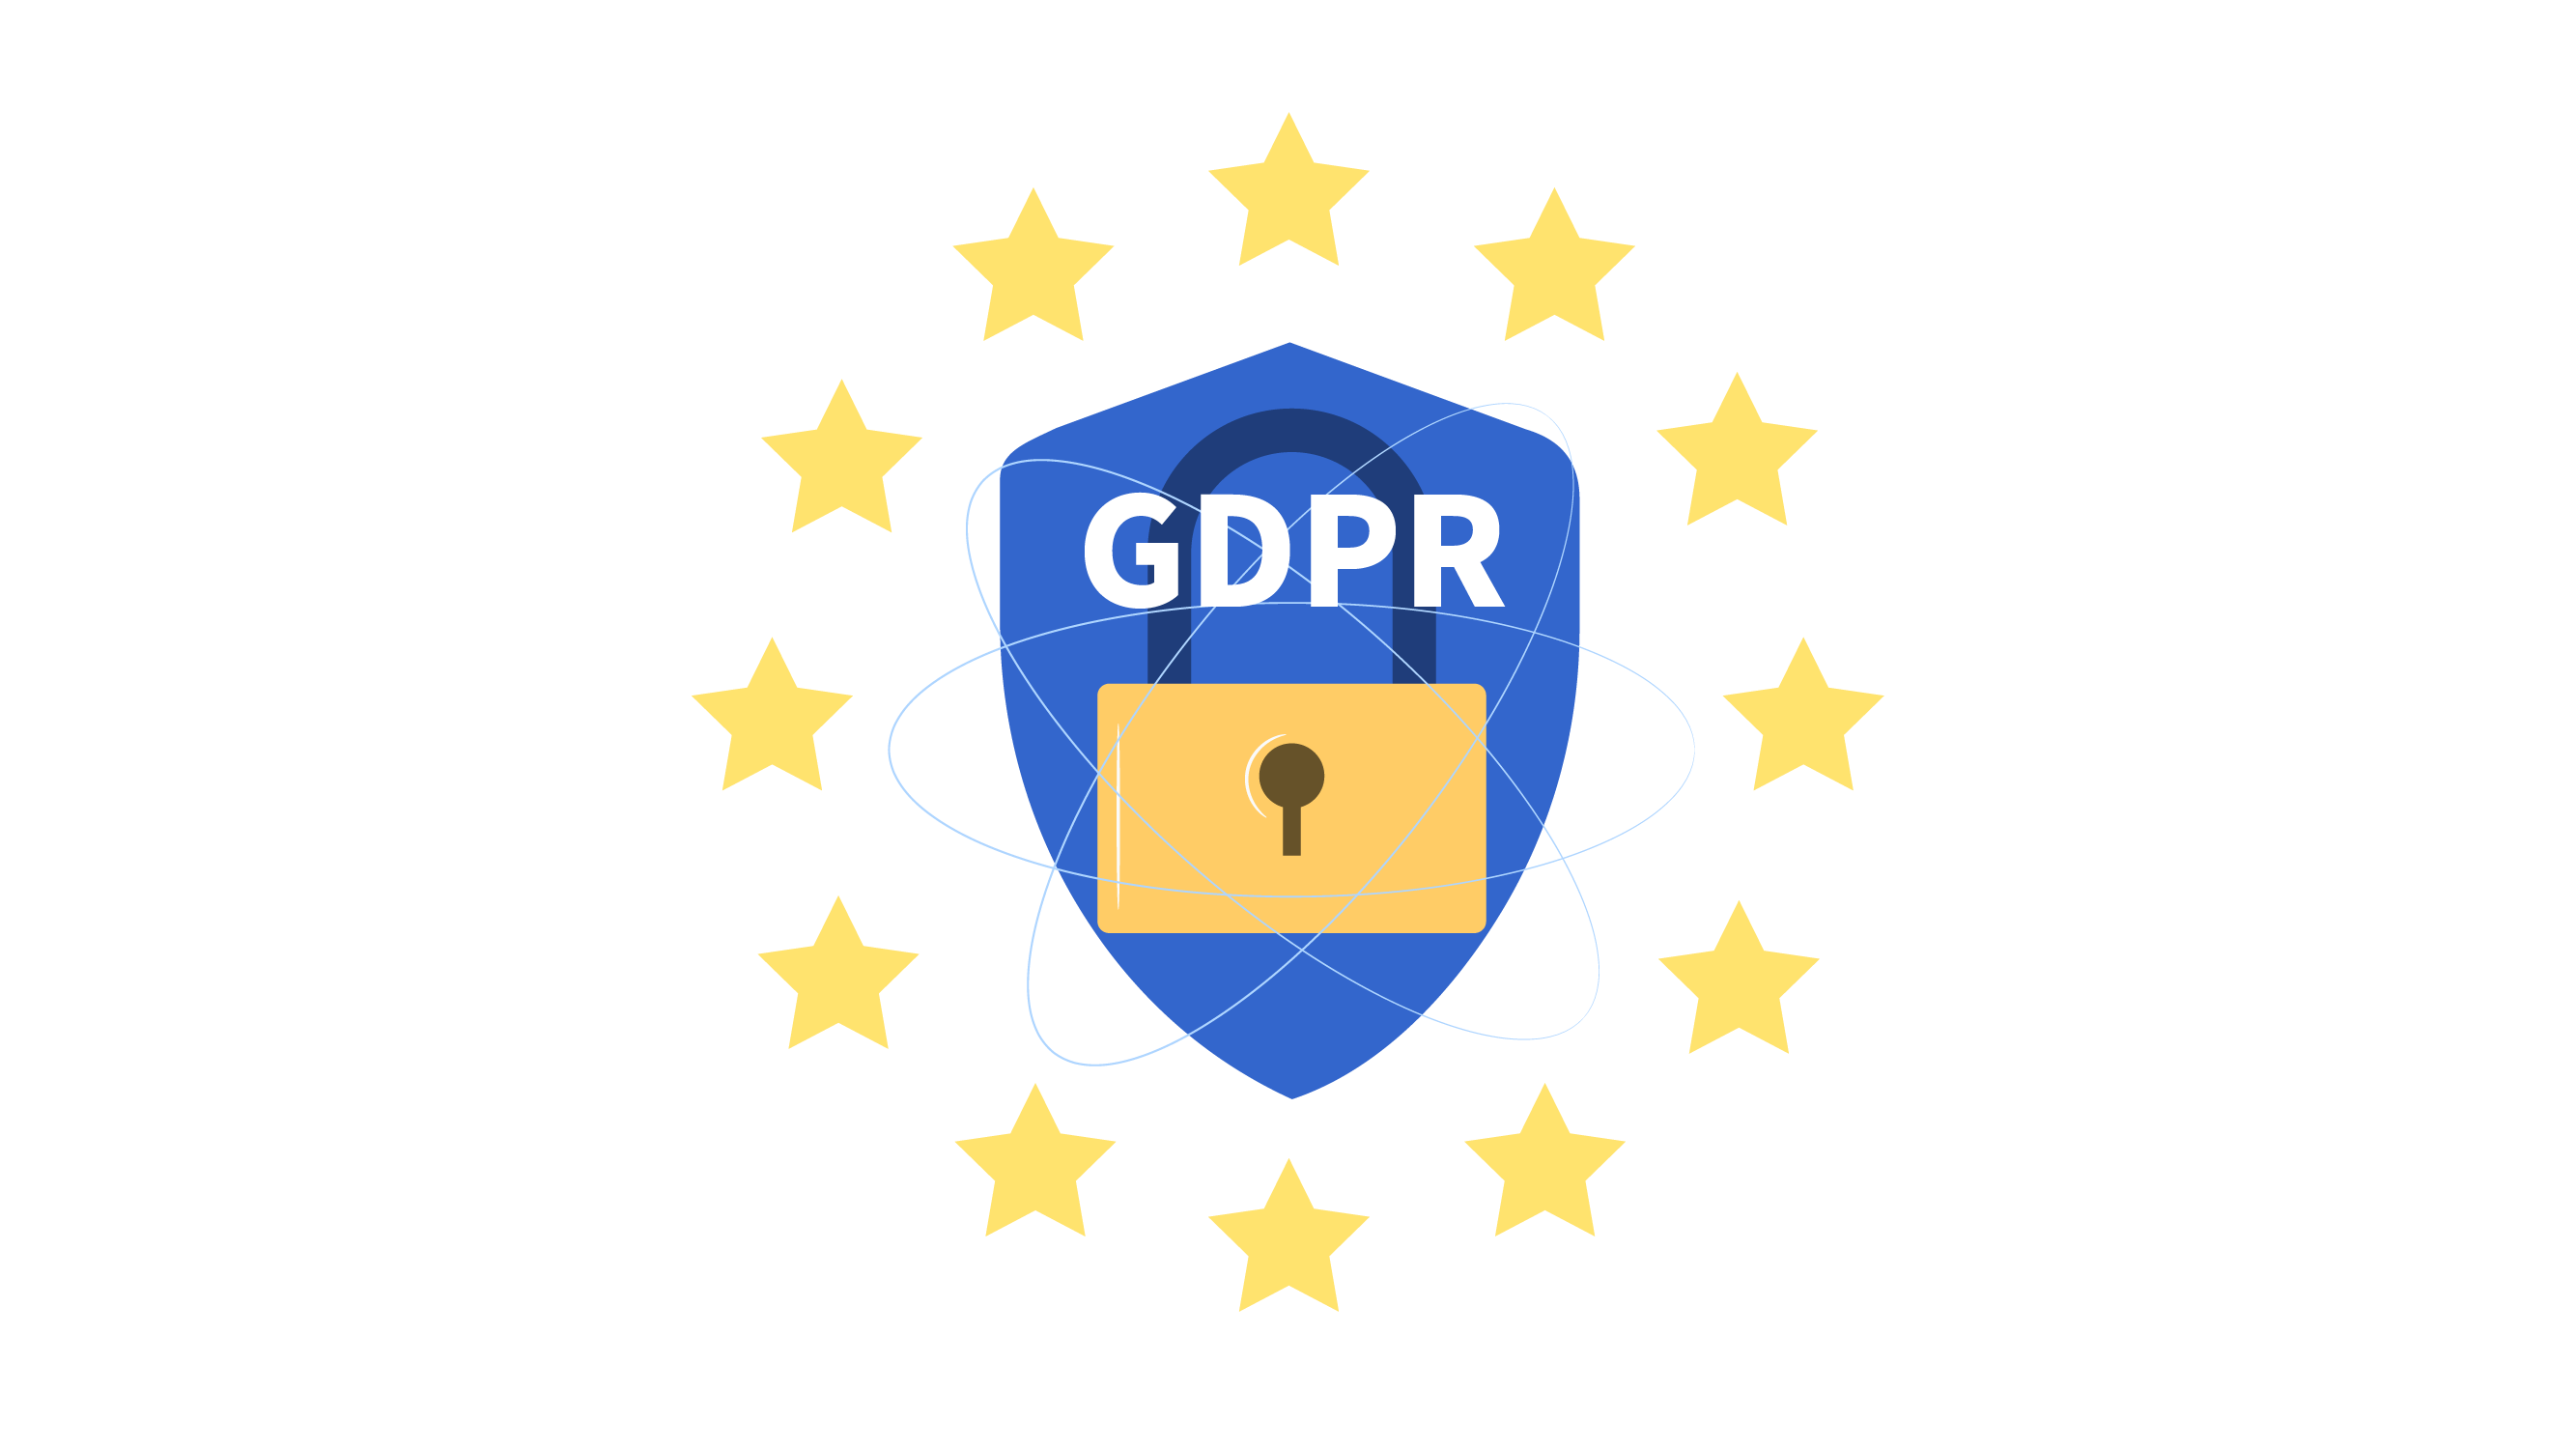 Ragic 遵循《歐盟一般資料保護規則》。歐洲用戶資料庫位於歐洲伺服器，其他區域用戶若有需求亦可洽詢